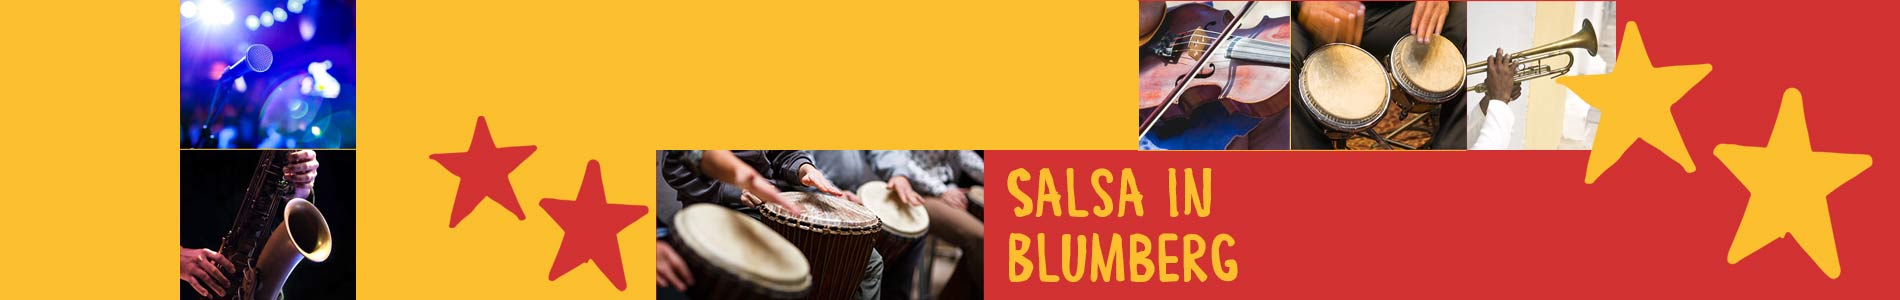 Salsa in Blumberg – Salsa lernen und tanzen, Tanzkurse, Partys, Veranstaltungen